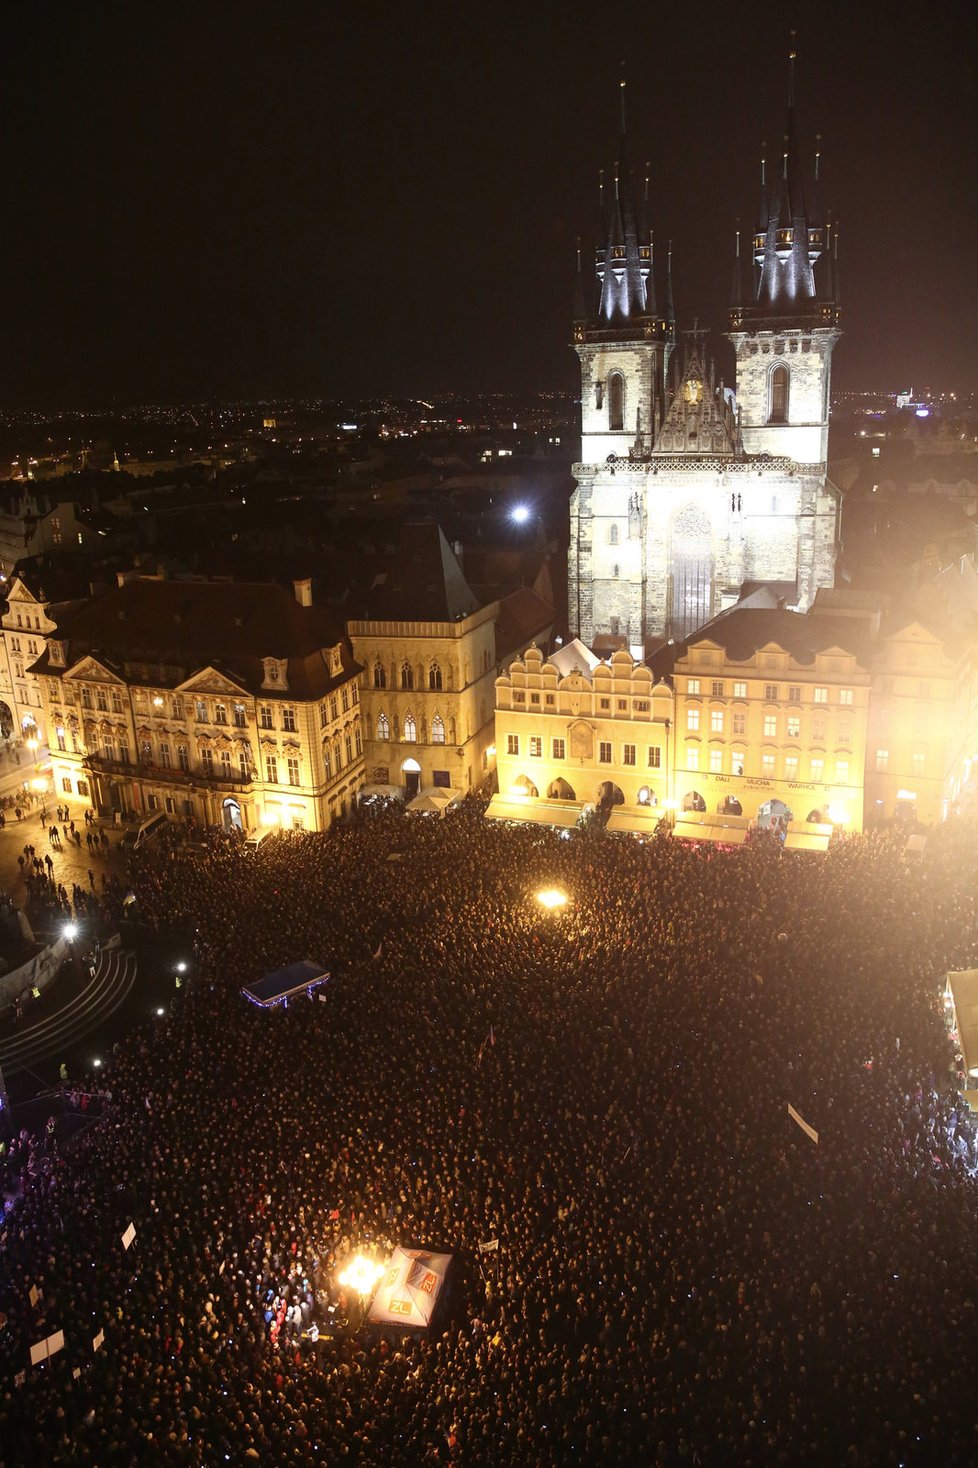 Pohled shora na demonstraci 28. října na Staroměstském náměstí